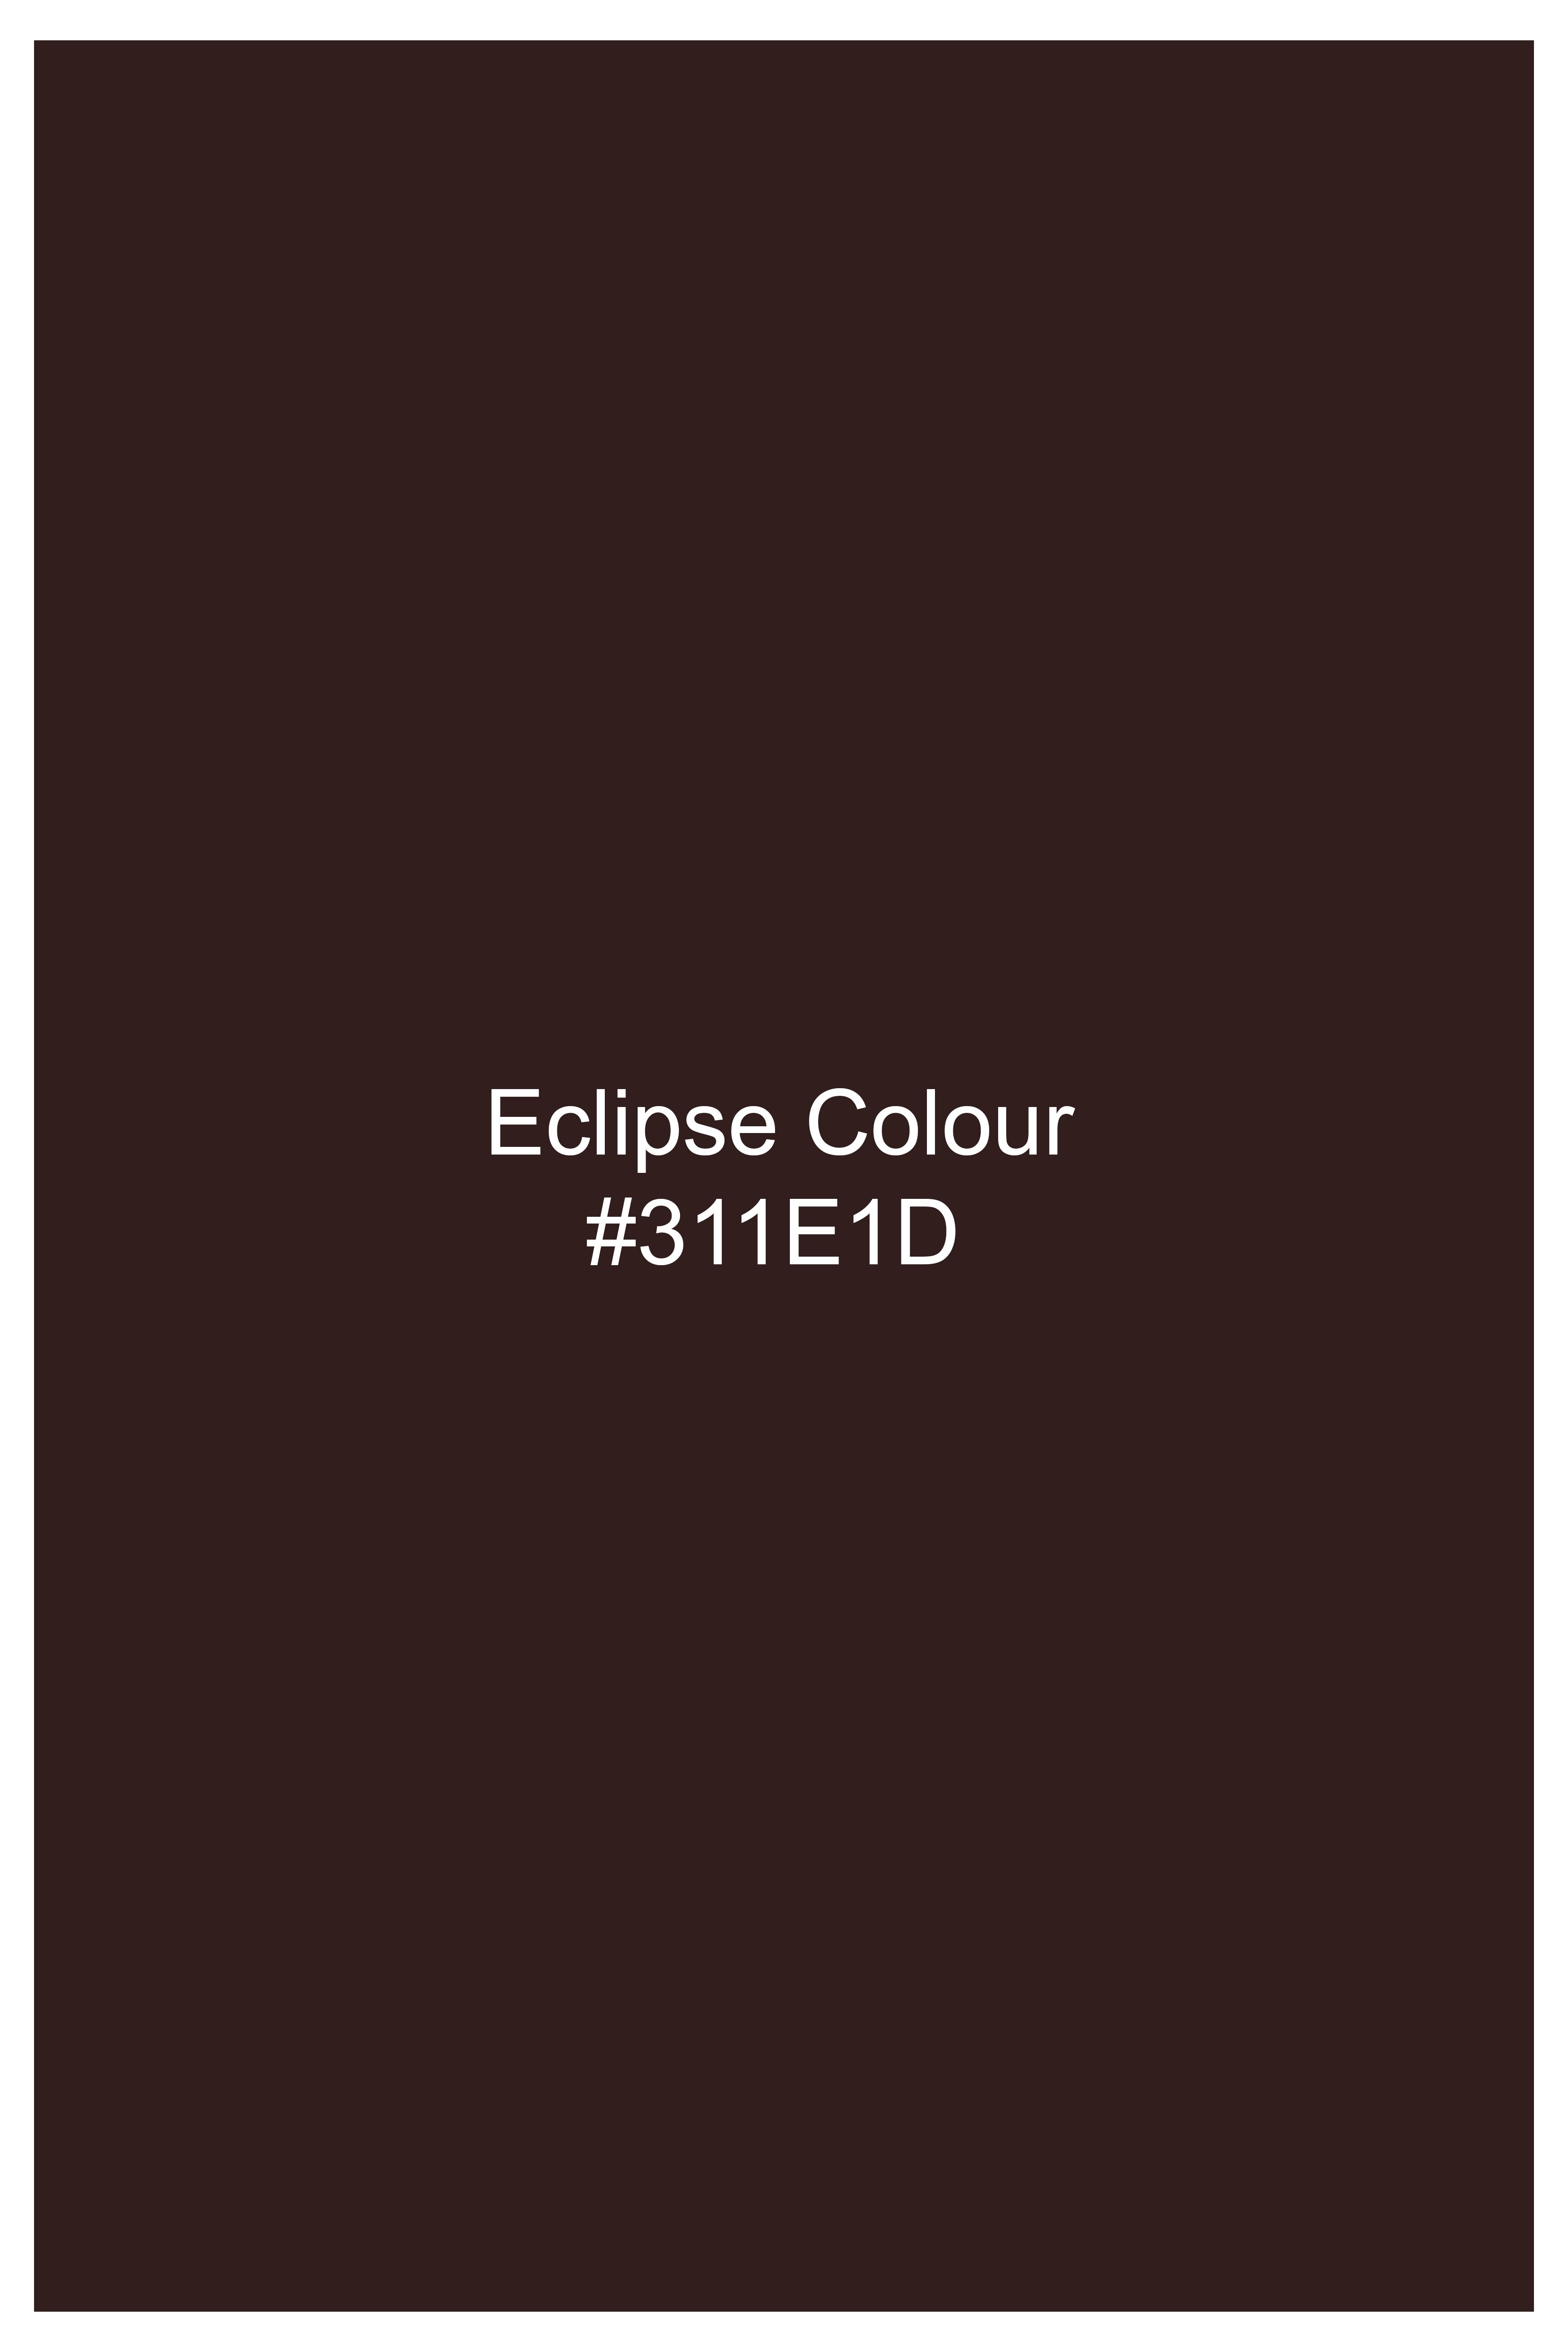 Eclipse Brown Premium Cotton Pant T2838-28, T2838-30, T2838-32, T2838-34, T2838-36, T2838-38, T2838-40, T2838-42, T2838-44